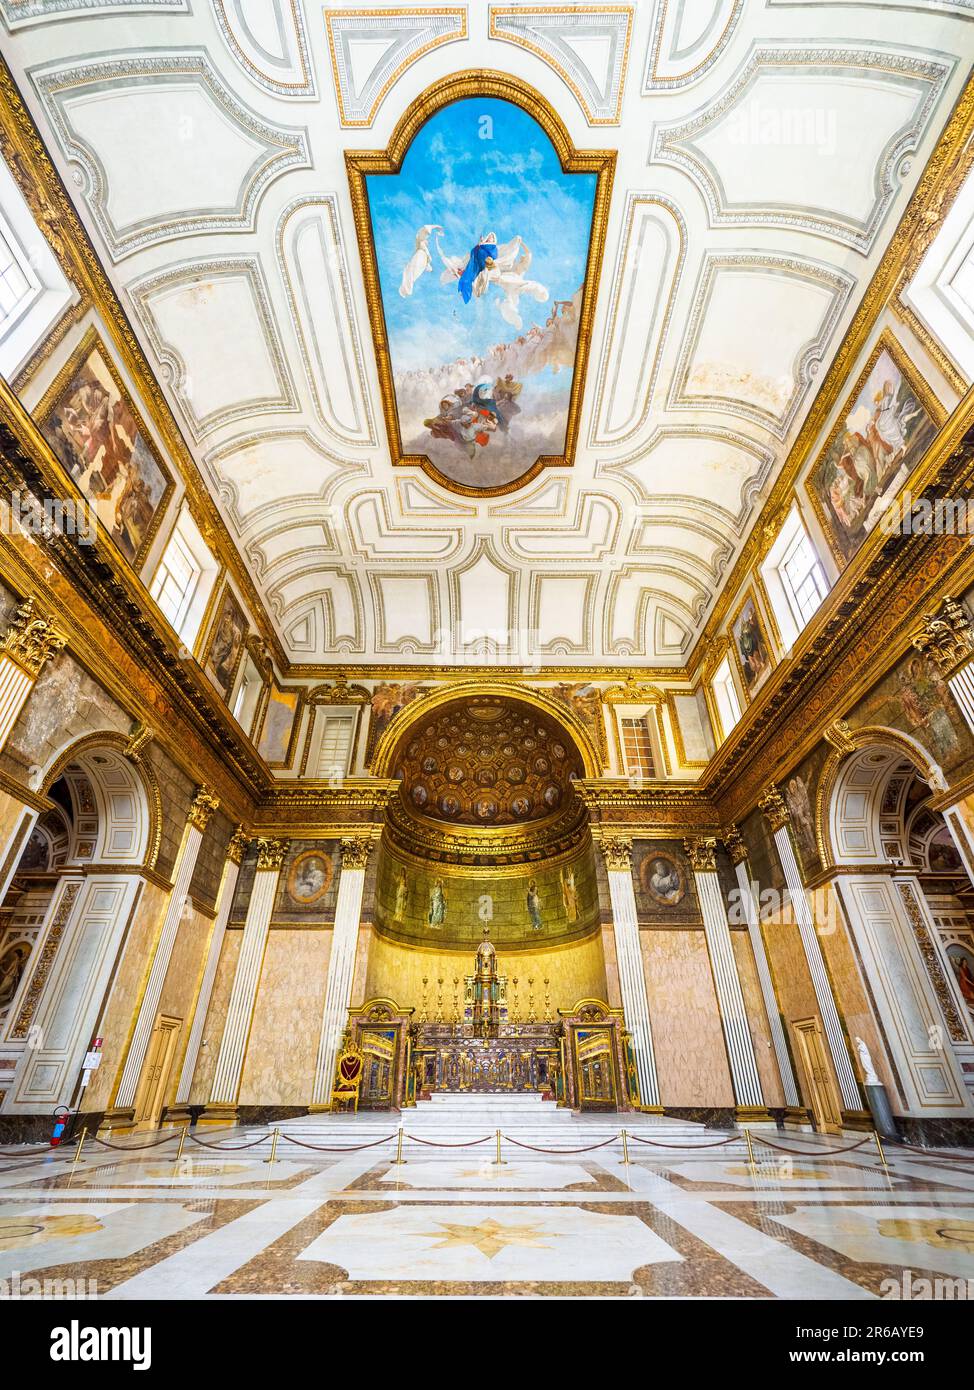 Zentrales Schiff der Königlichen Kapelle, gewidmet der Mariä Himmelfahrt - Königlicher Palast von Neapel, der 1734 zur königlichen Residenz der Bourbons wurde - Neapel, Italien Stockfoto